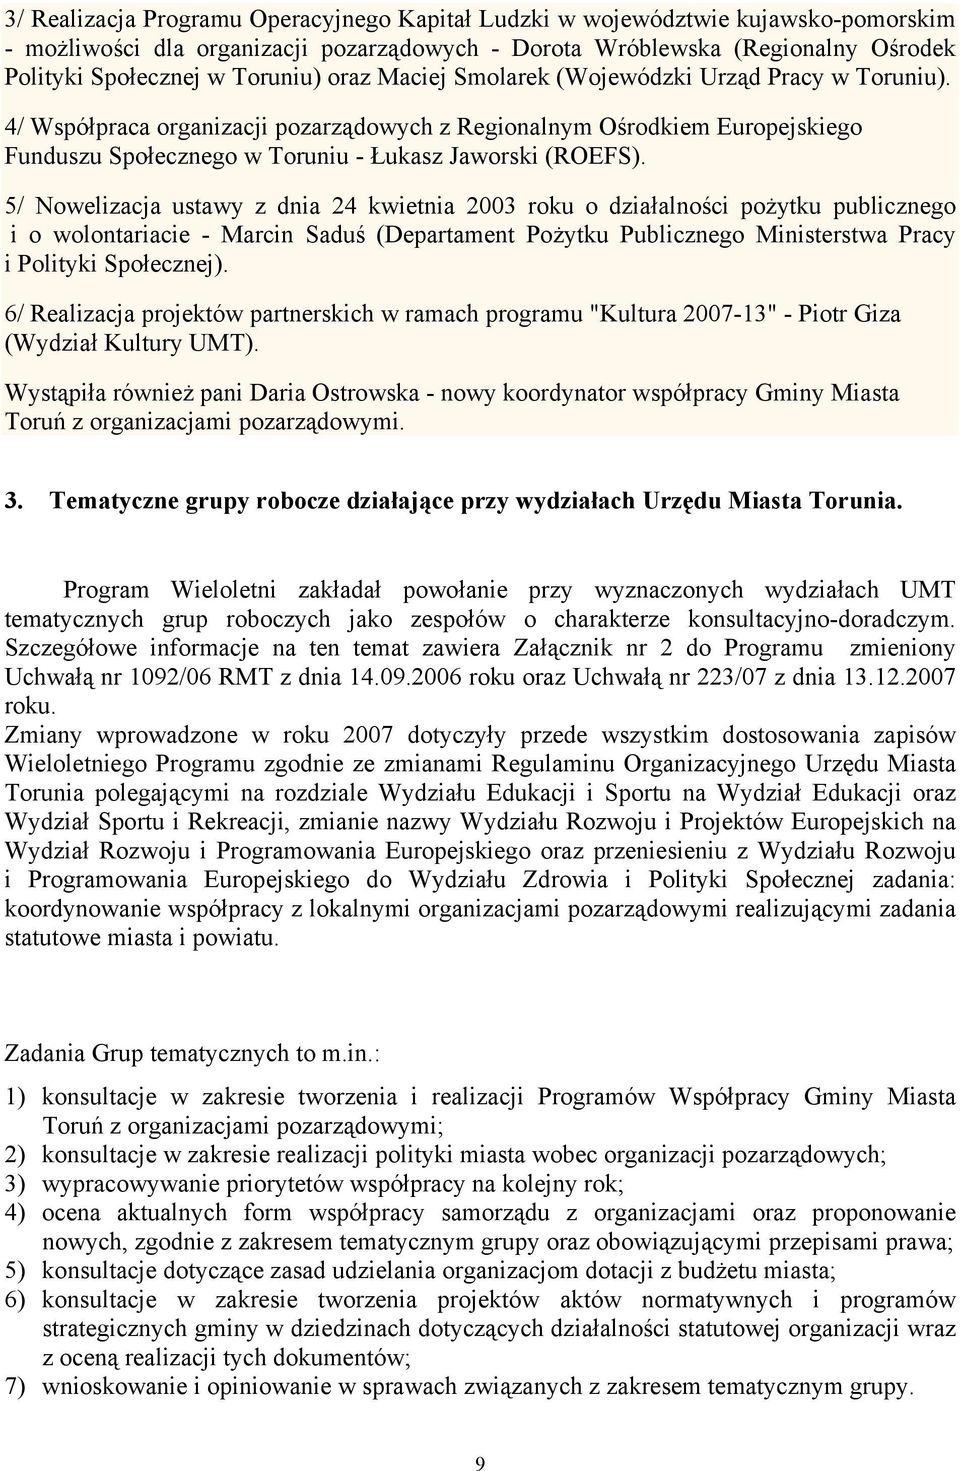 5/ Nowelizacja ustawy z dnia 24 kwietnia 2003 roku o działalności pożytku publicznego i o wolontariacie - Marcin Saduś (Departament Pożytku Publicznego Ministerstwa Pracy i Polityki Społecznej).